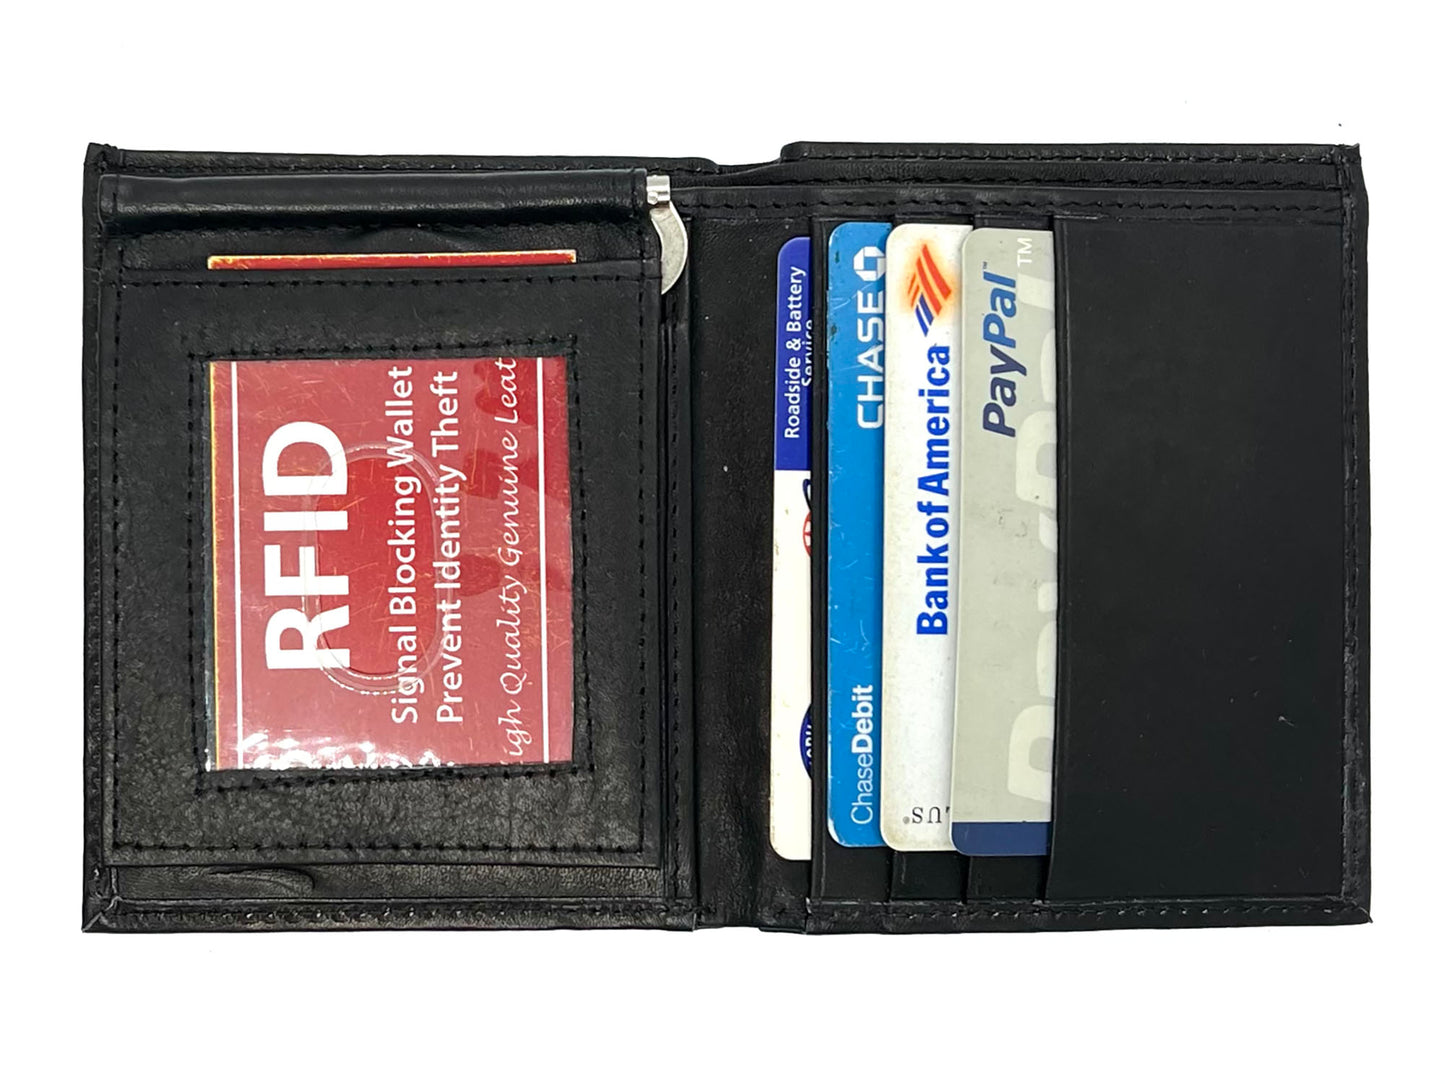 Genuine Leather Men's Money Clip Bifold Wallet Card Front Pocket Detachable Card Holder